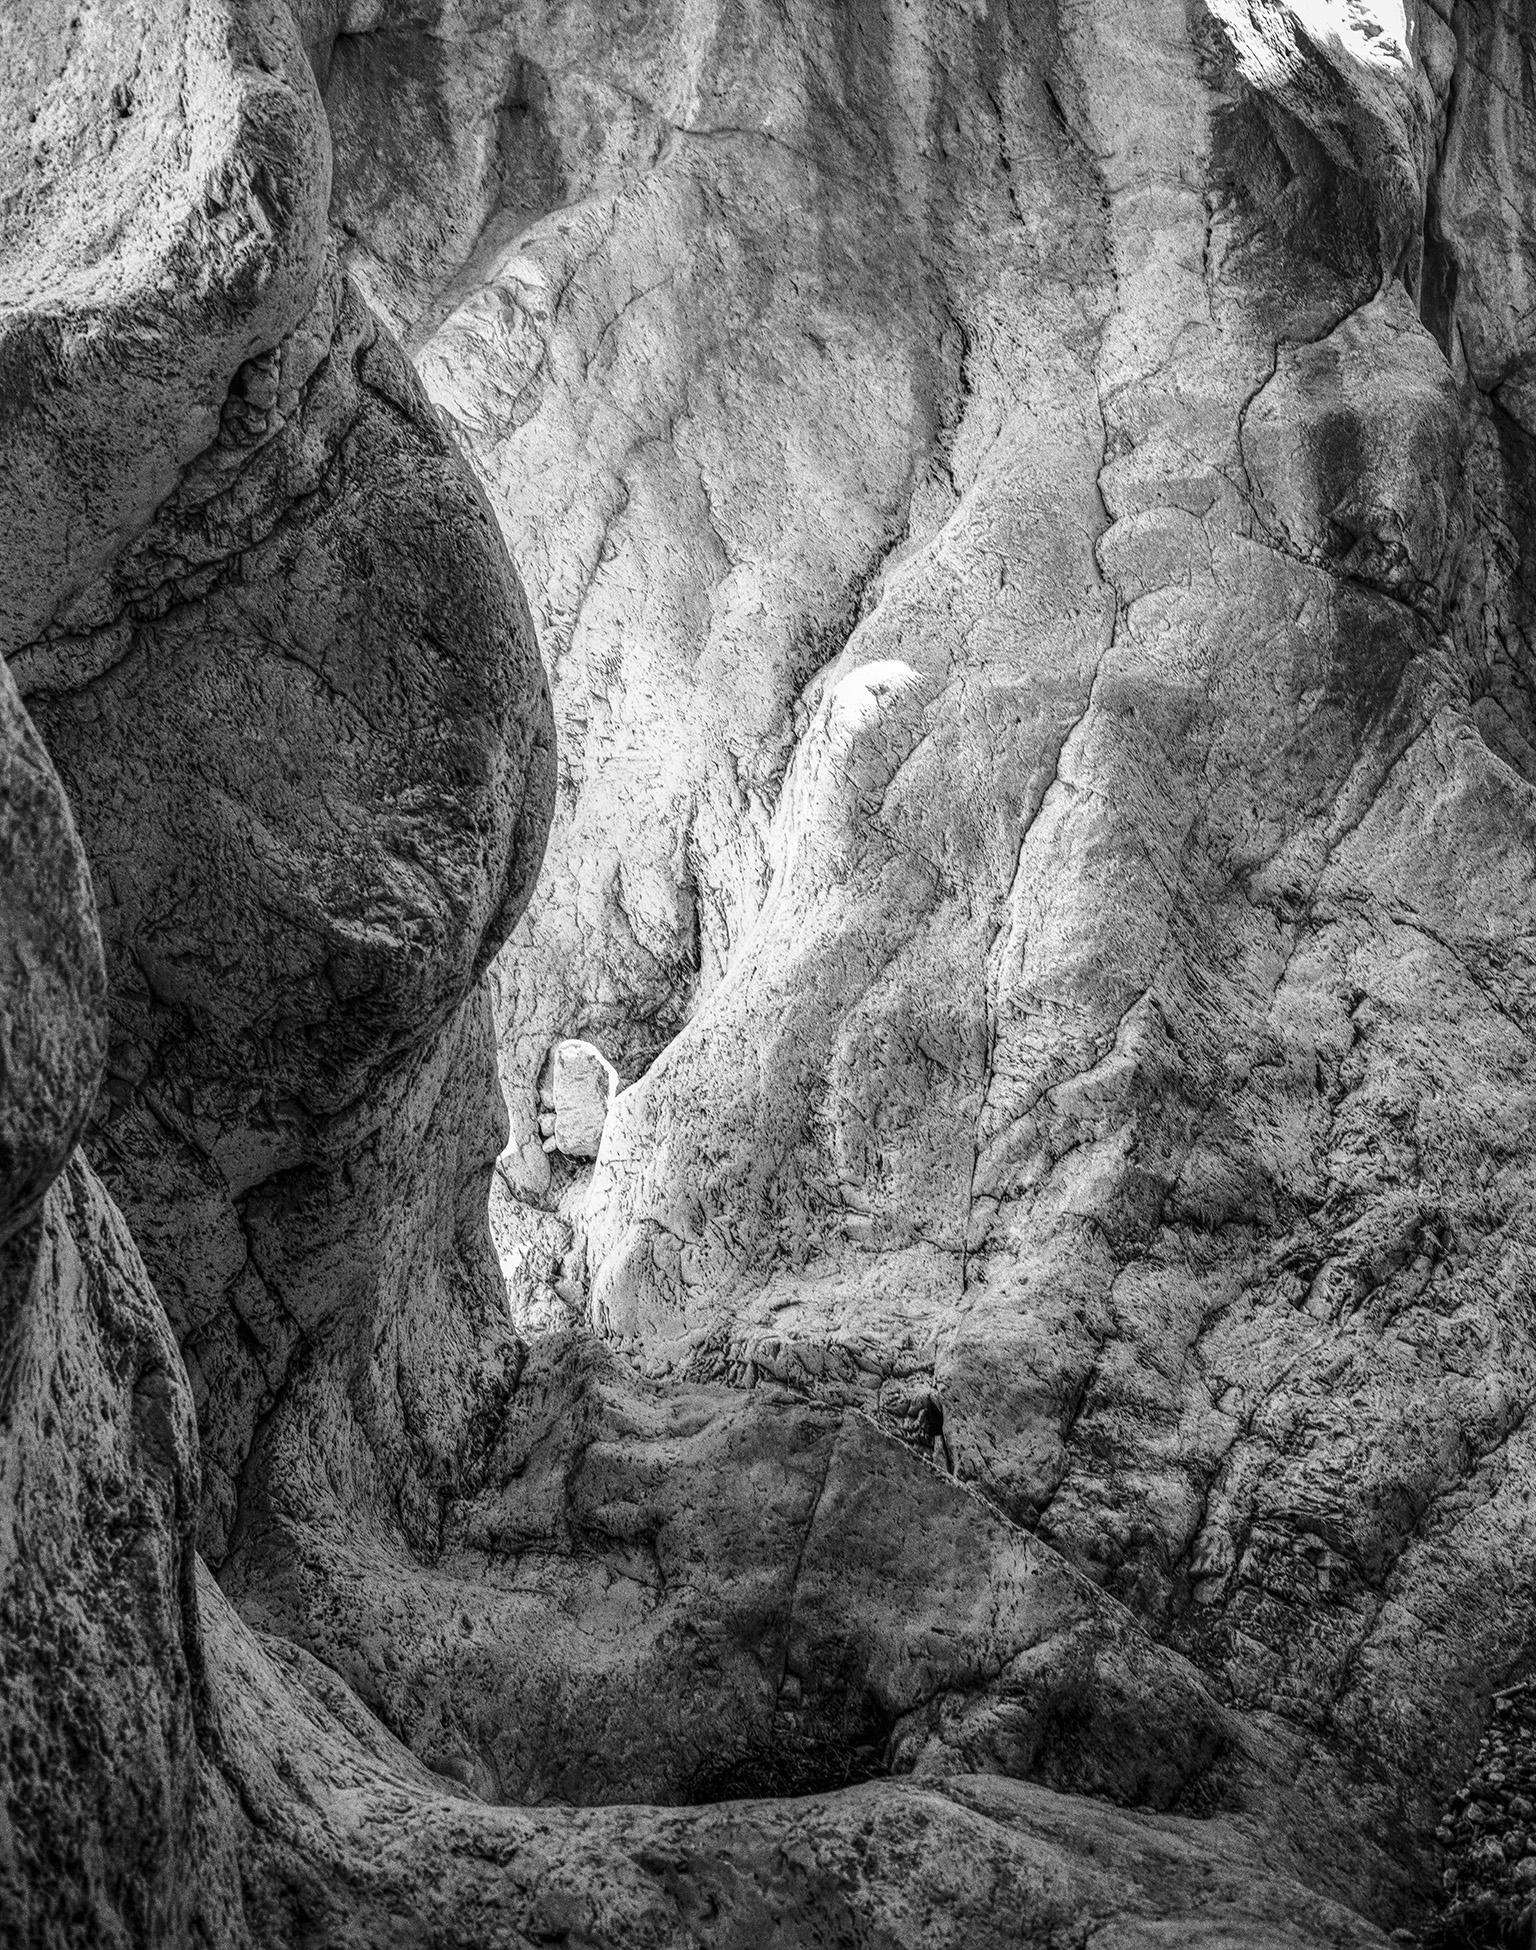 Black and White Photograph John Stathatos - Hommage à Heraclitus : Terre V - Photographie de paysage en noir et blanc d'une grotte